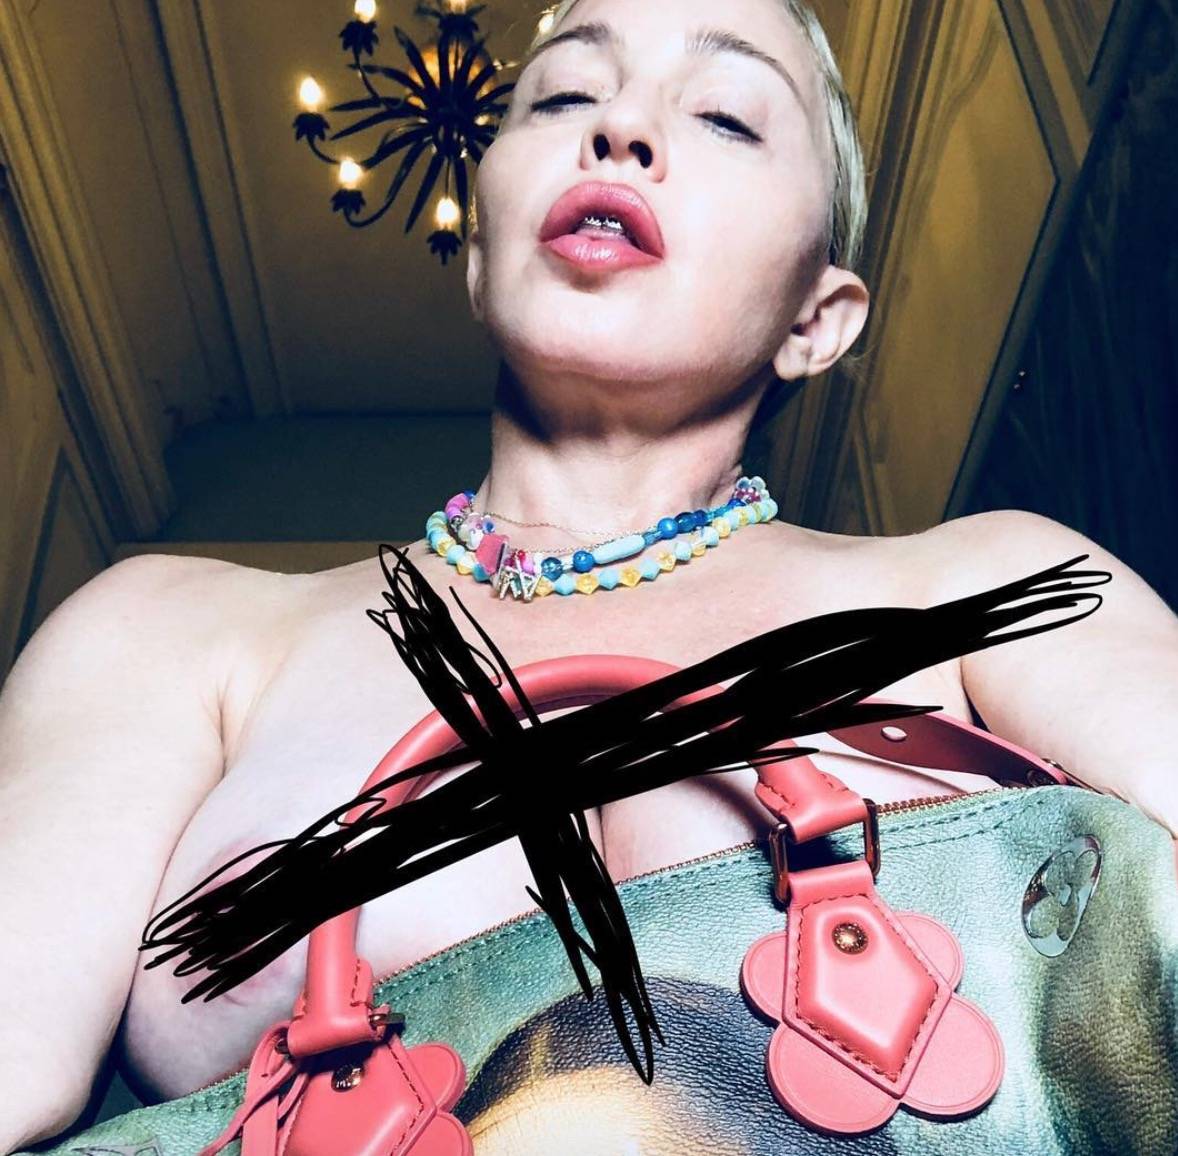 Topless, apparecchio e borsa: cosa è successo a Madonna?